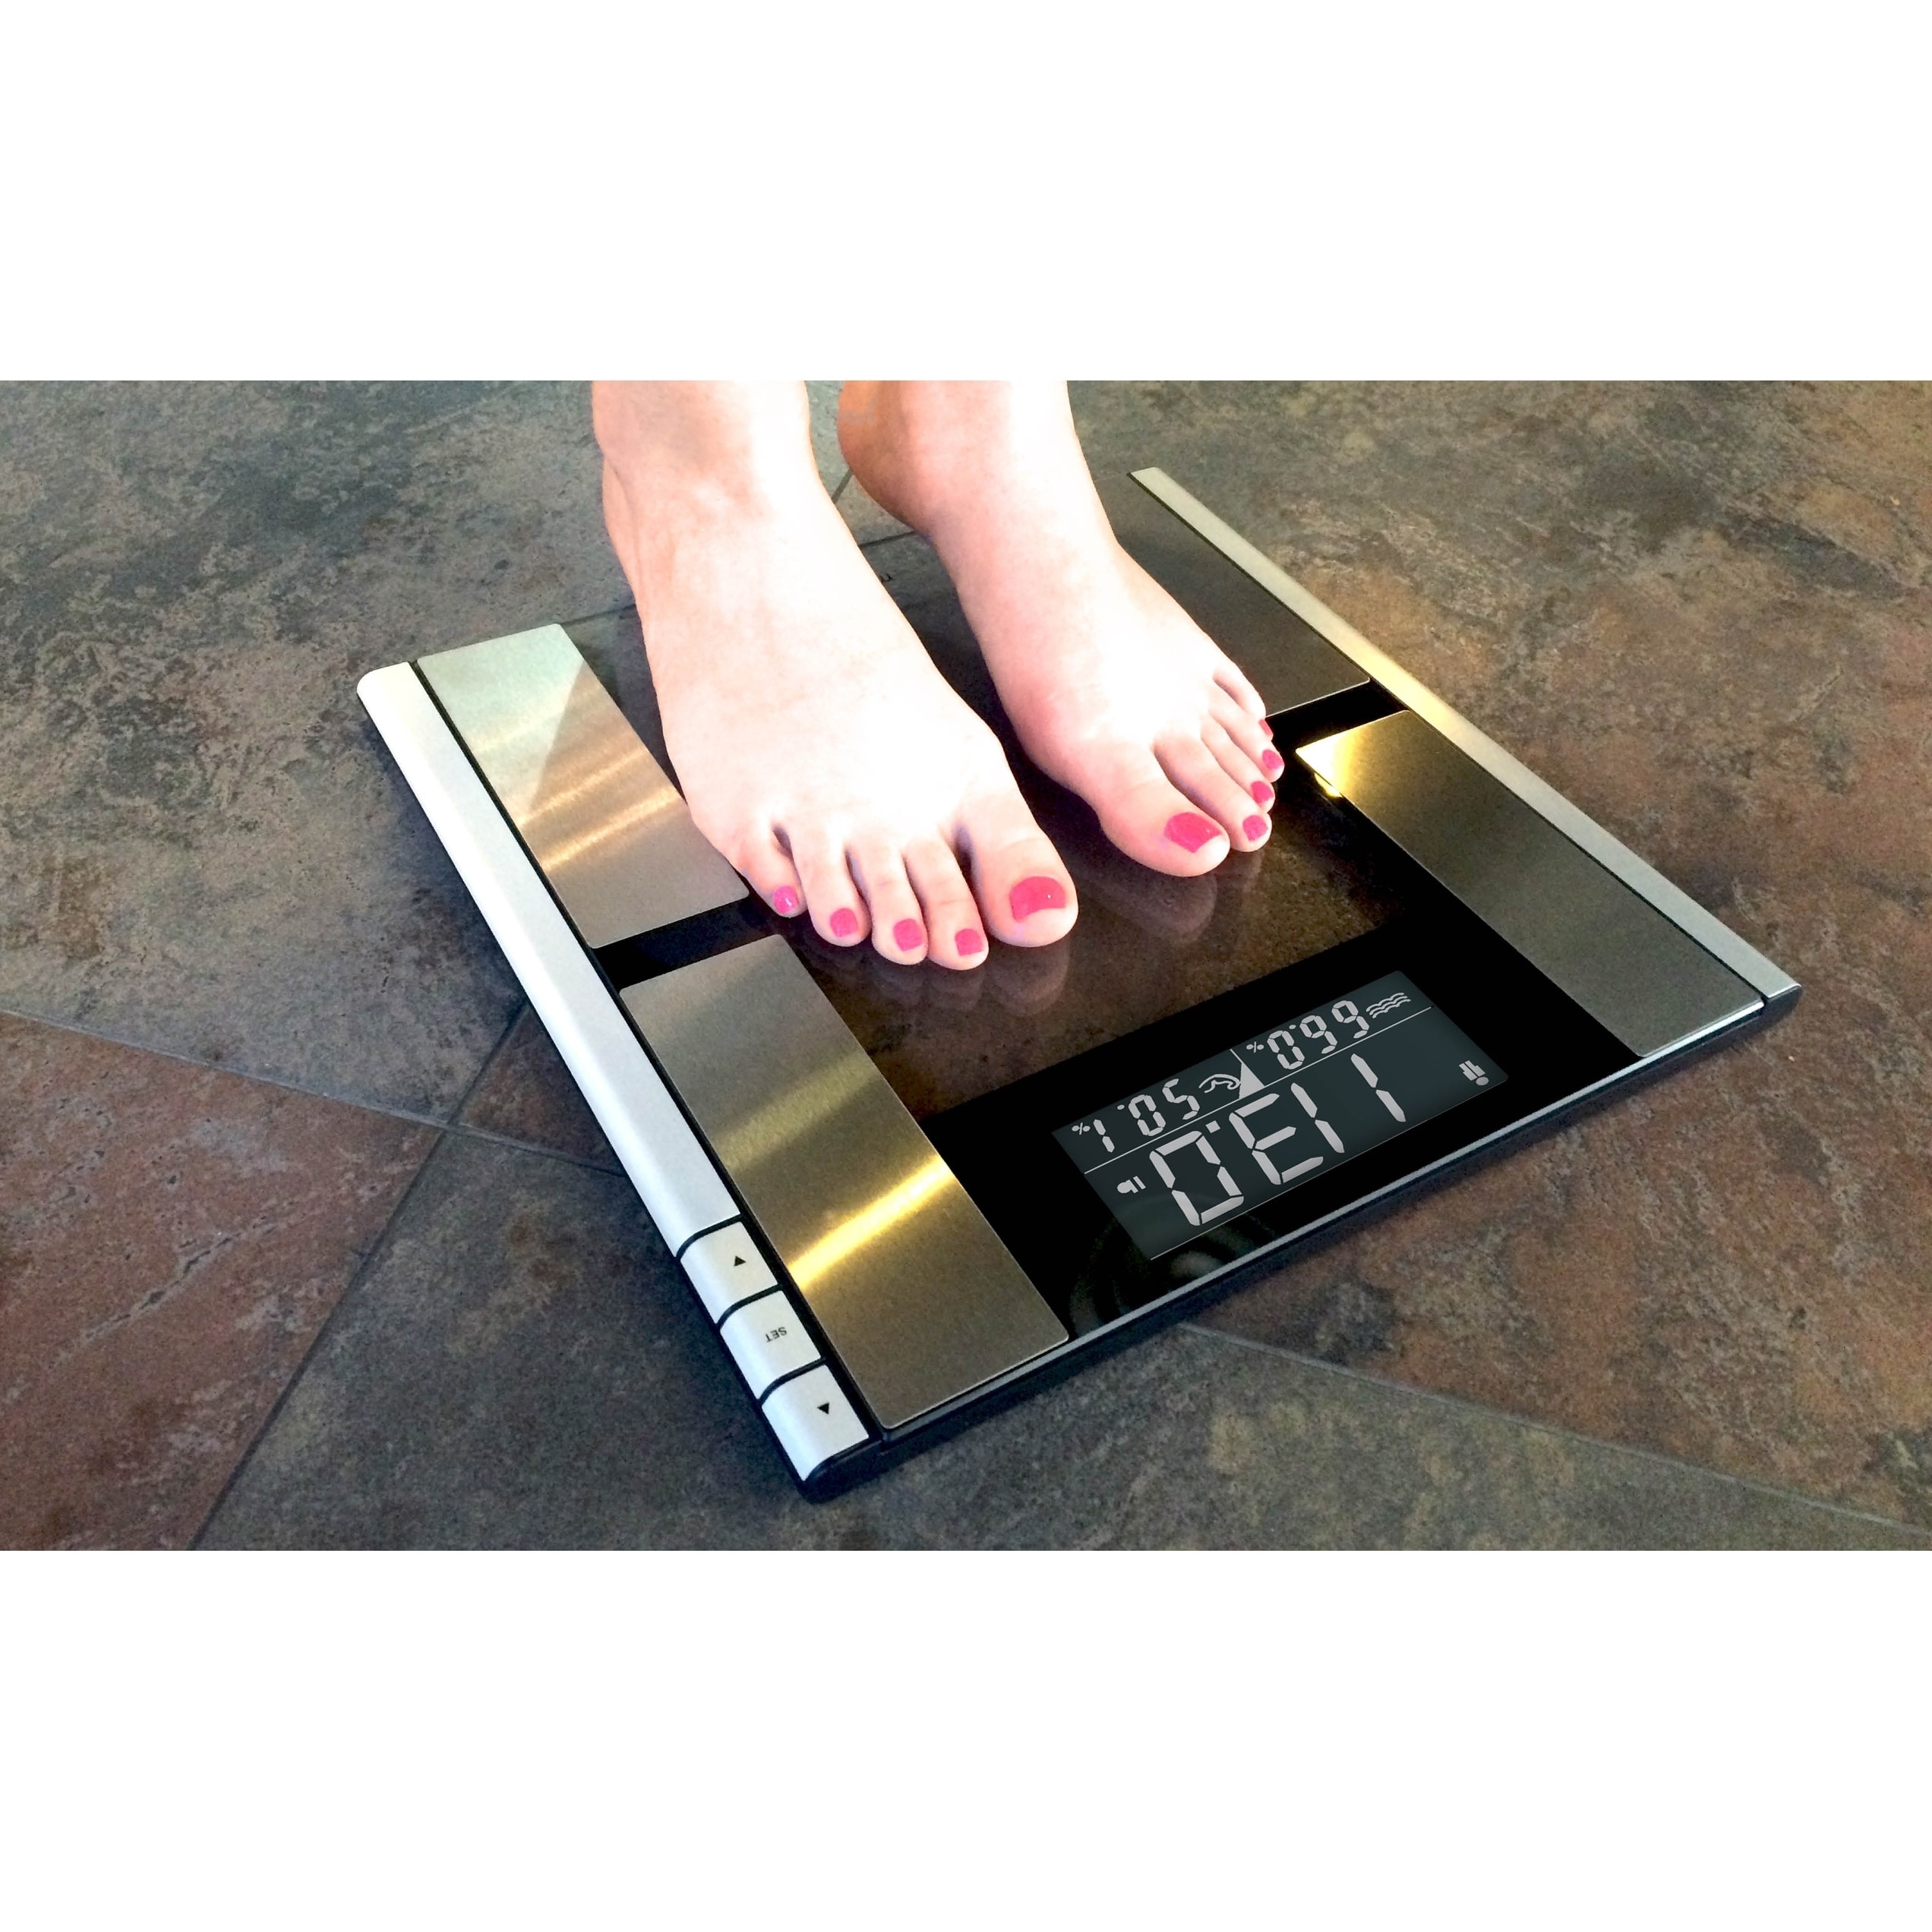 My Life My Shop Digital Body AnalyzerScale- Scale forbody weight